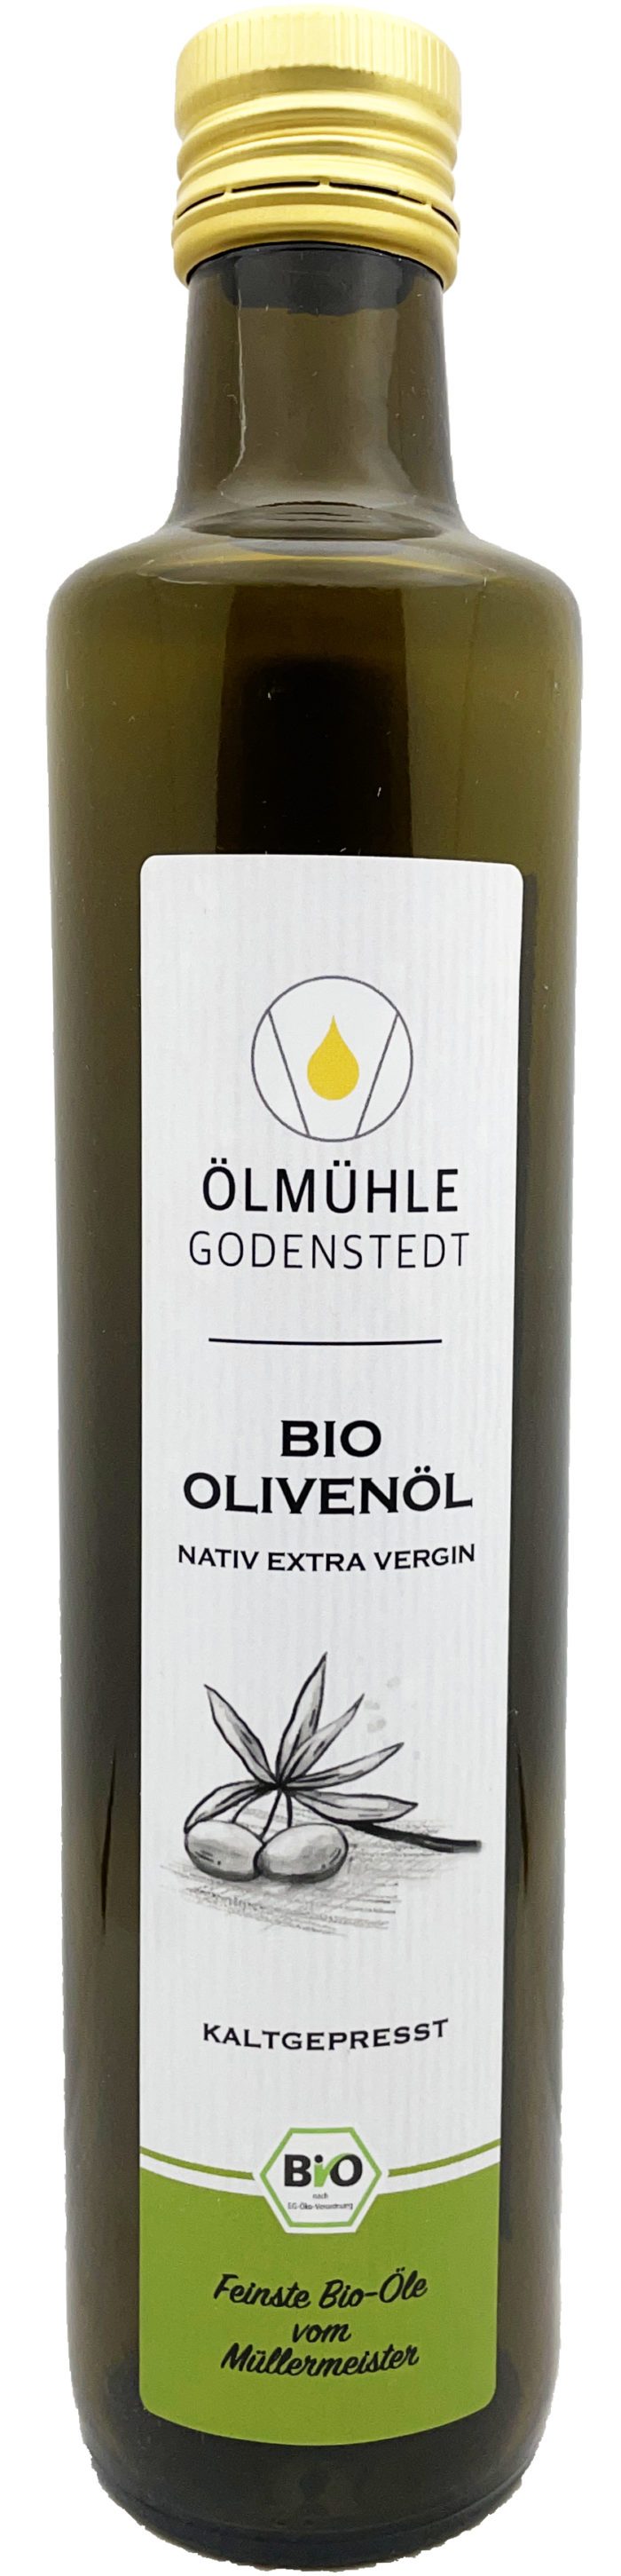 Bio Olivenöl kaufen extra vergin bei der Ölmühle Godenstedt